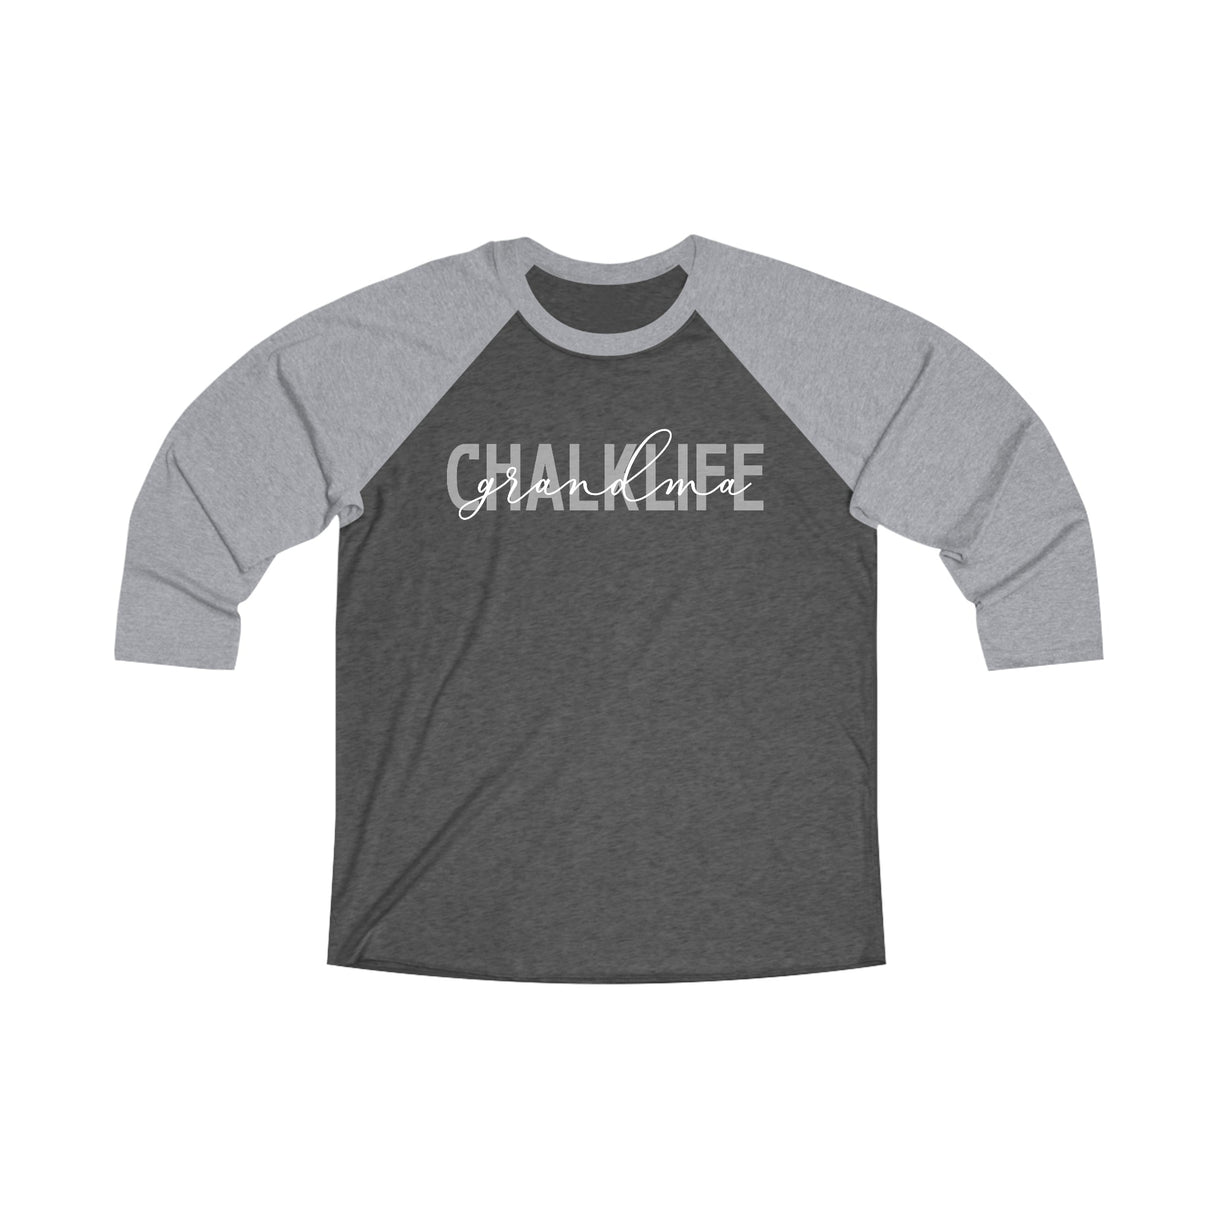 The Classic 2-Tone T-Shirt (Mom, Dad, Grandma) - Chalklife, LLC